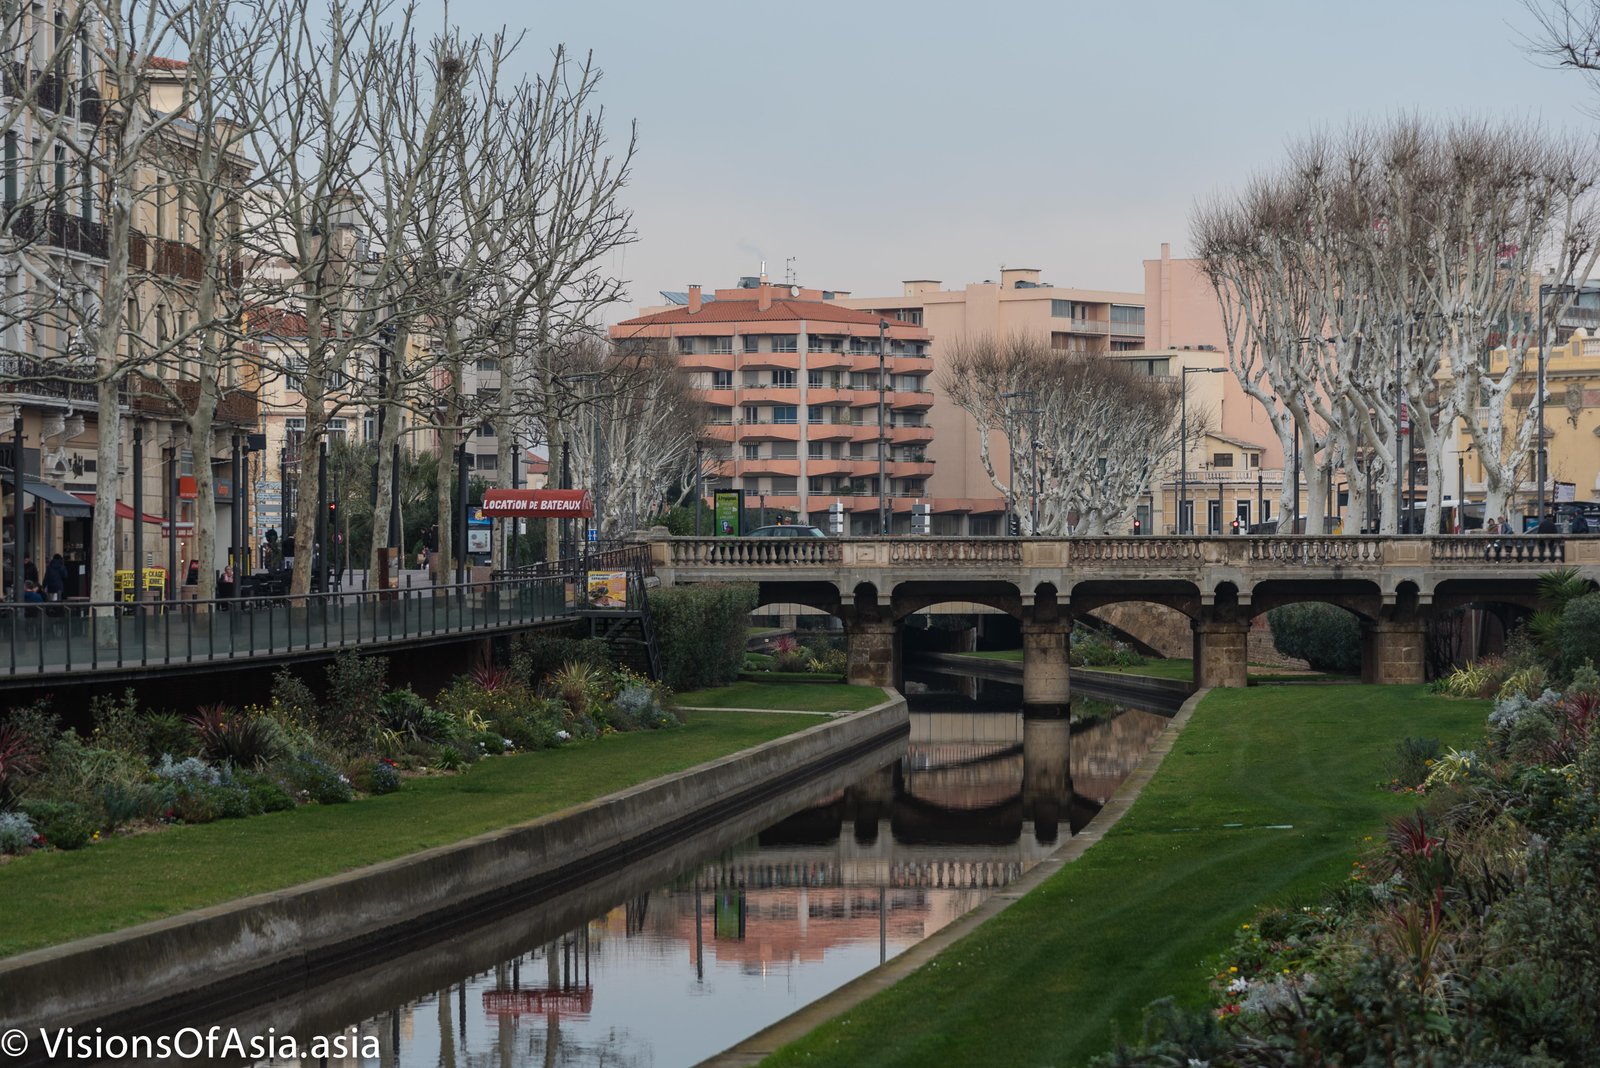 A canal in Perpignan